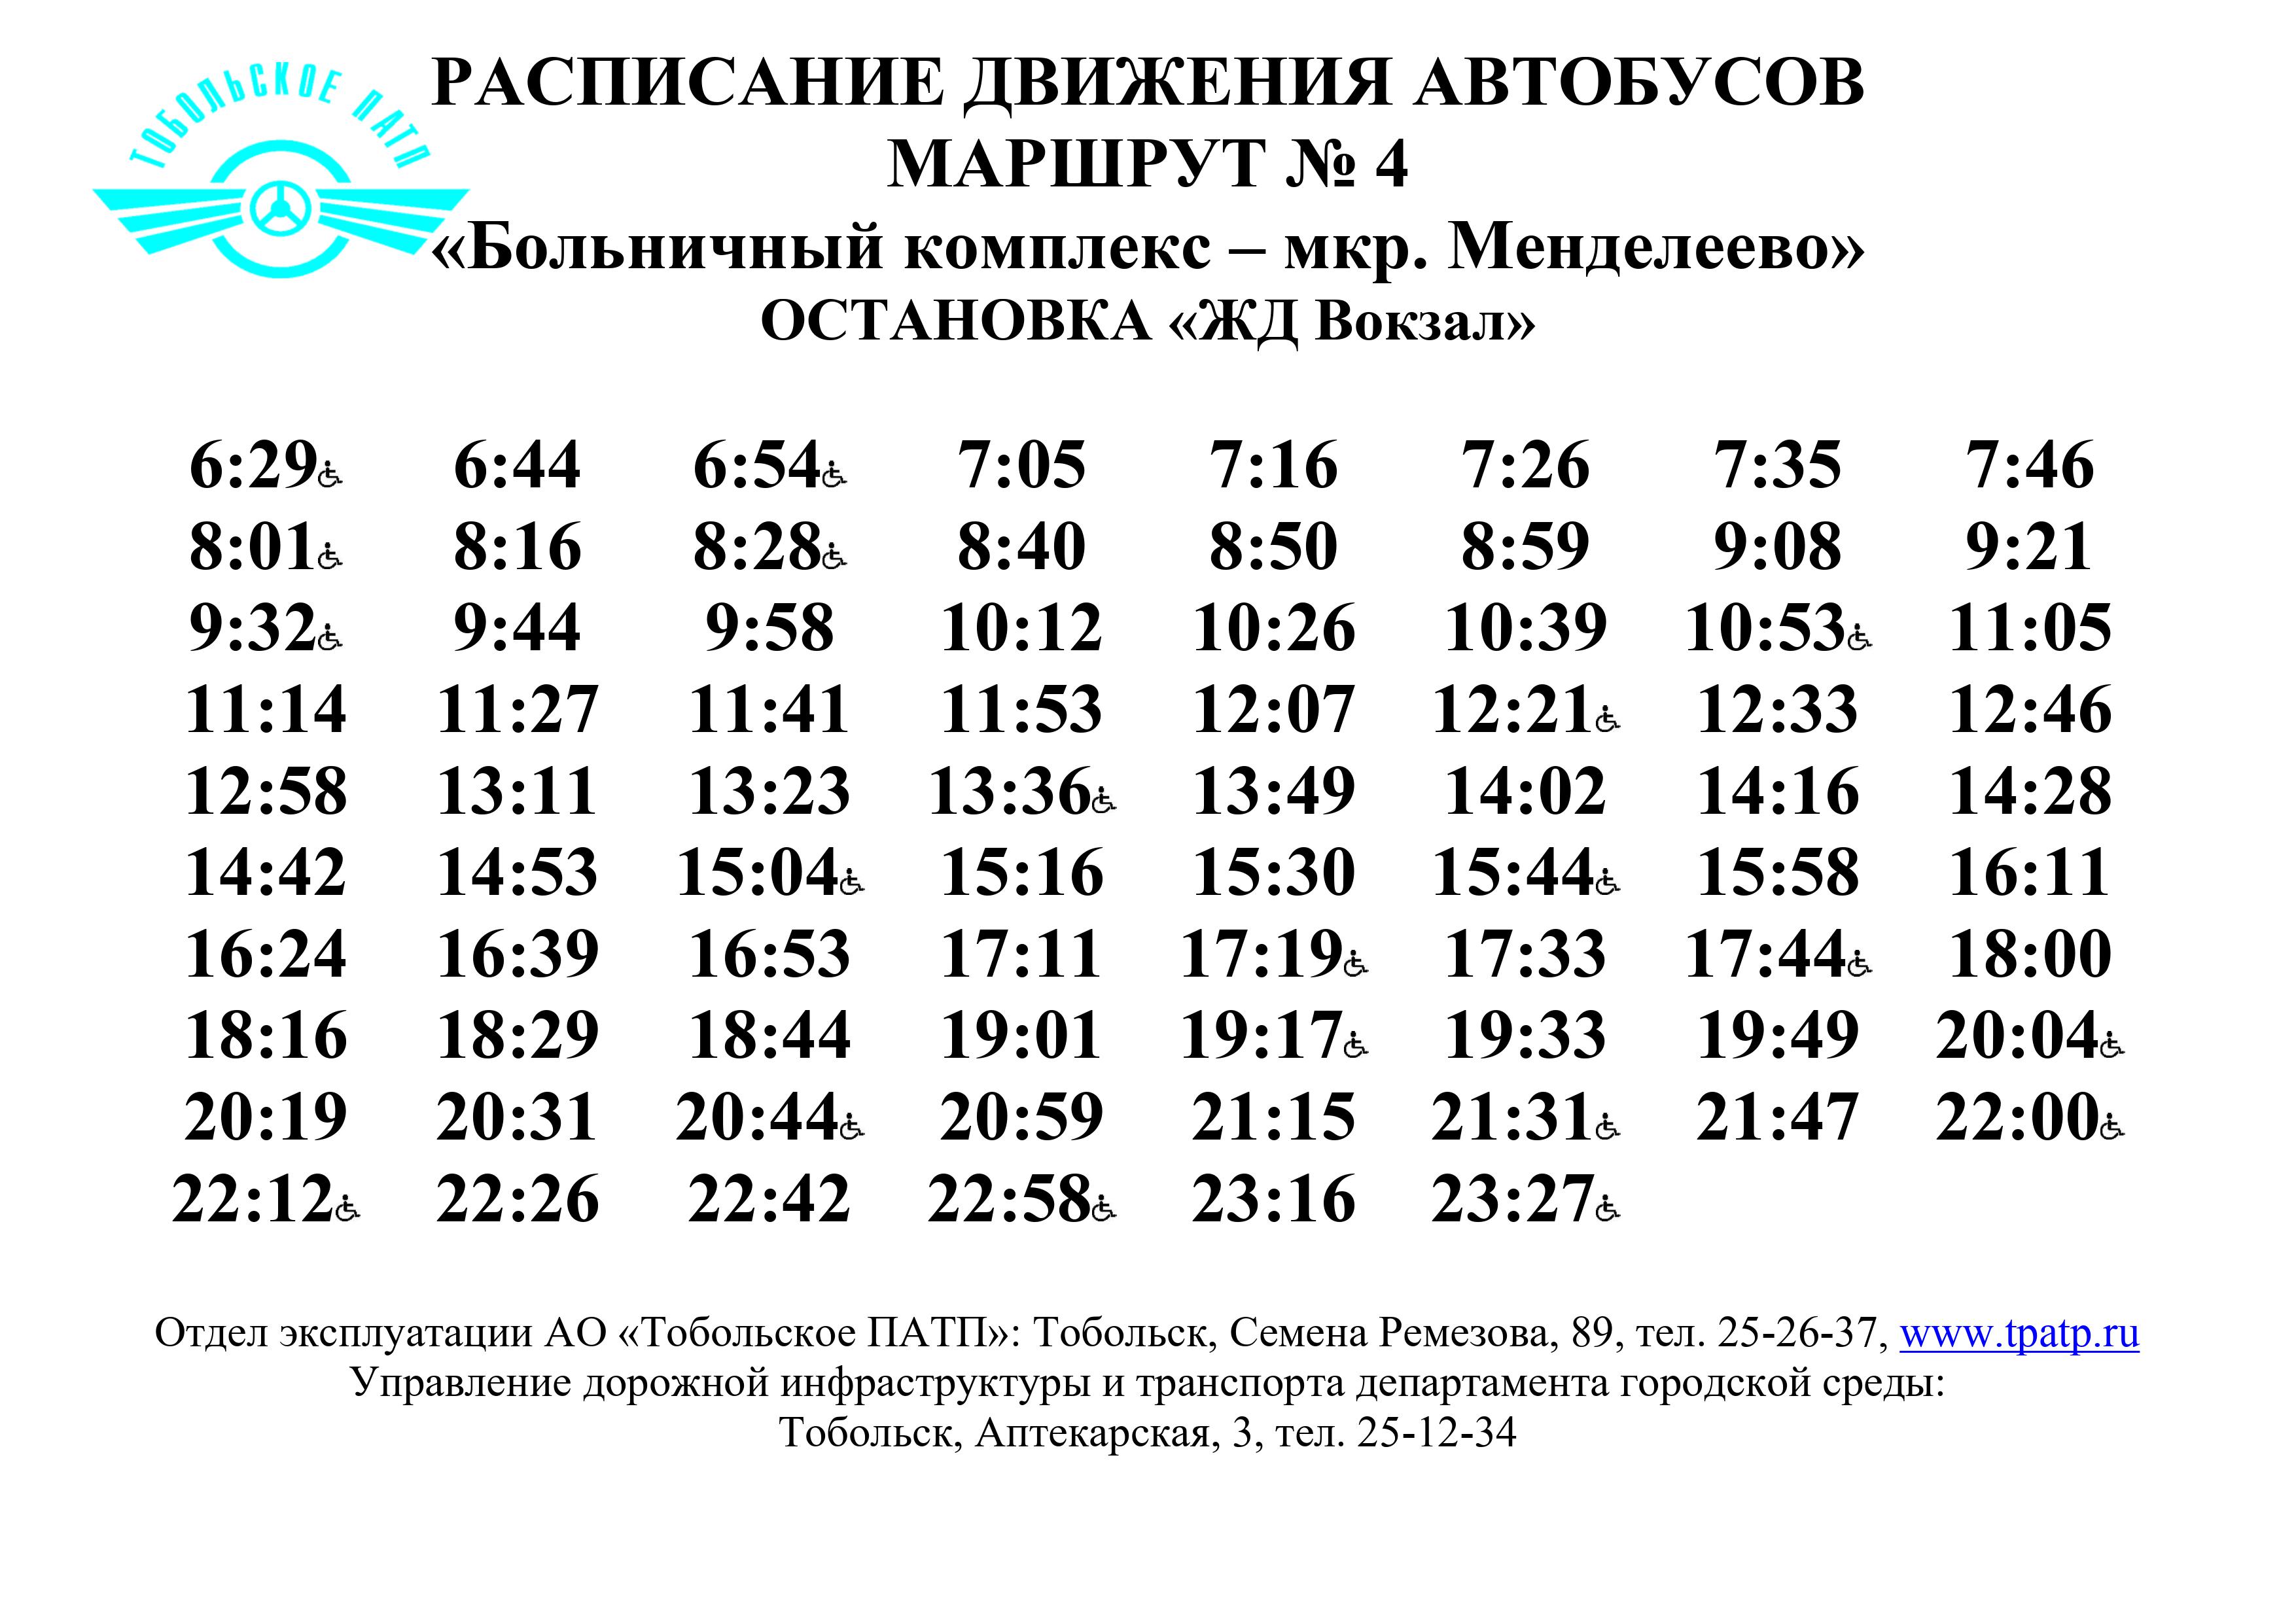 Александров следнево расписание